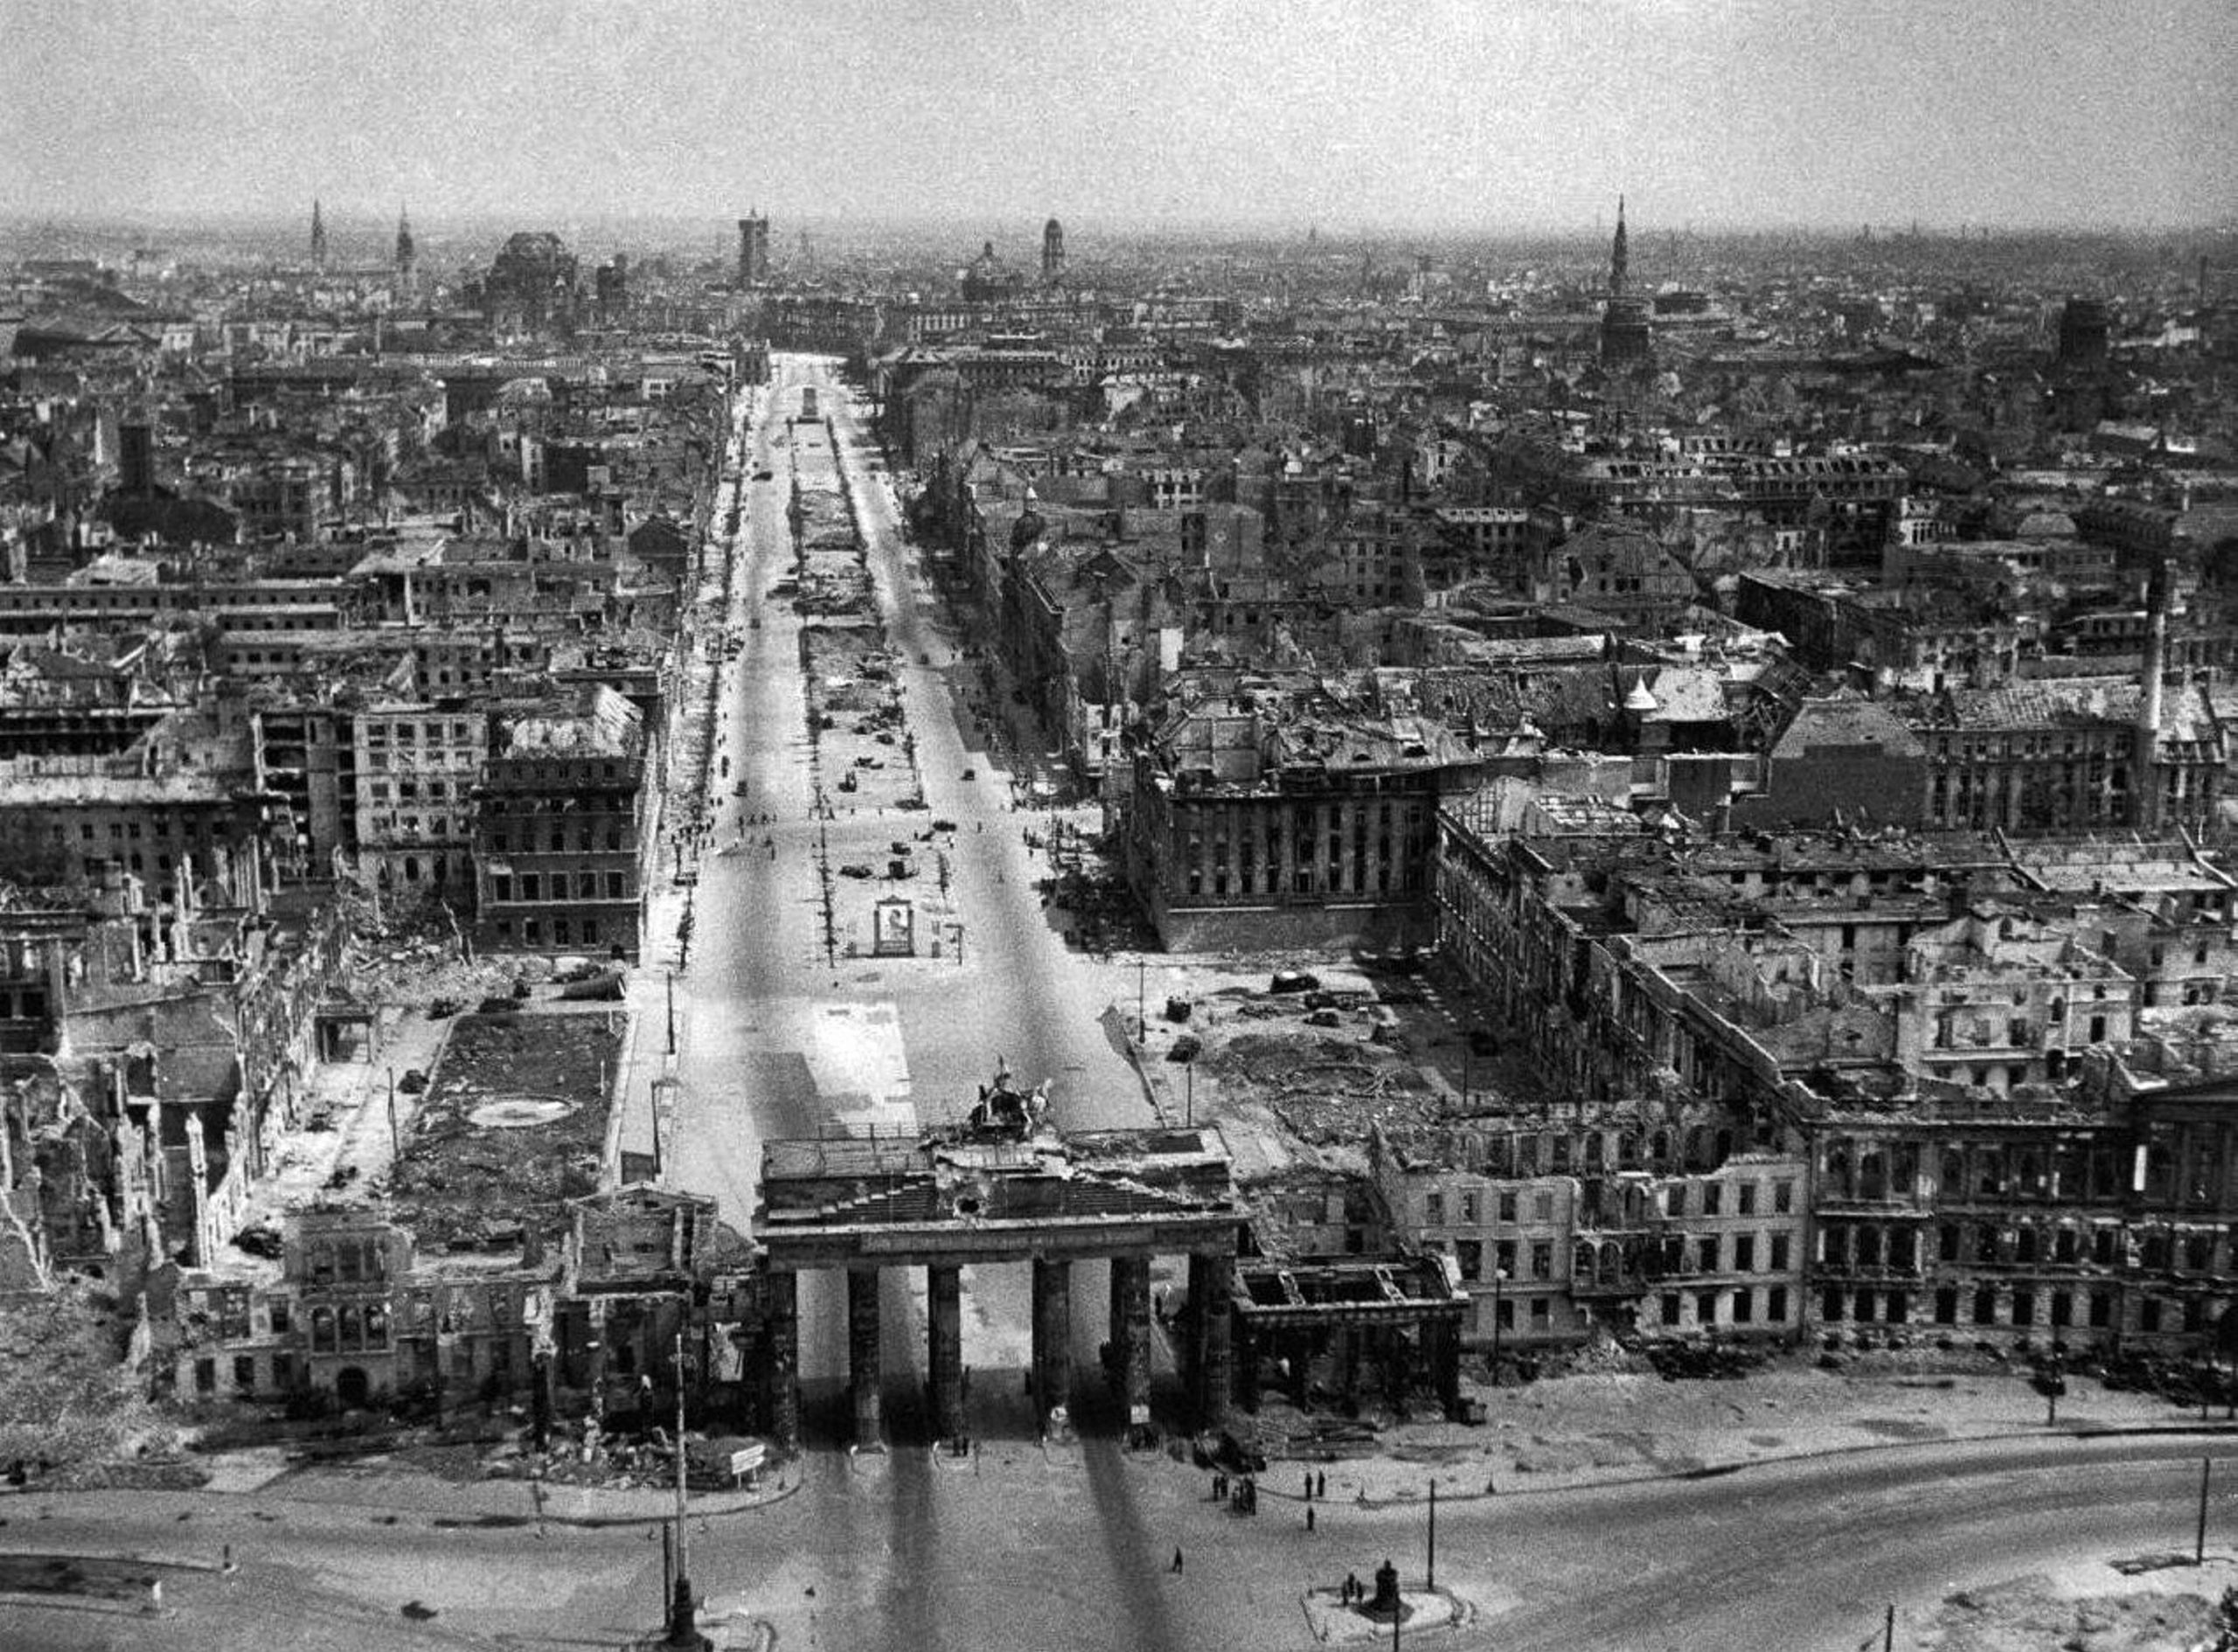 Fotos vom Kriegsende in Berlin: Der zerstörte Pariser Platz und das Brandenburger Tor, Berlin im Mai 1945